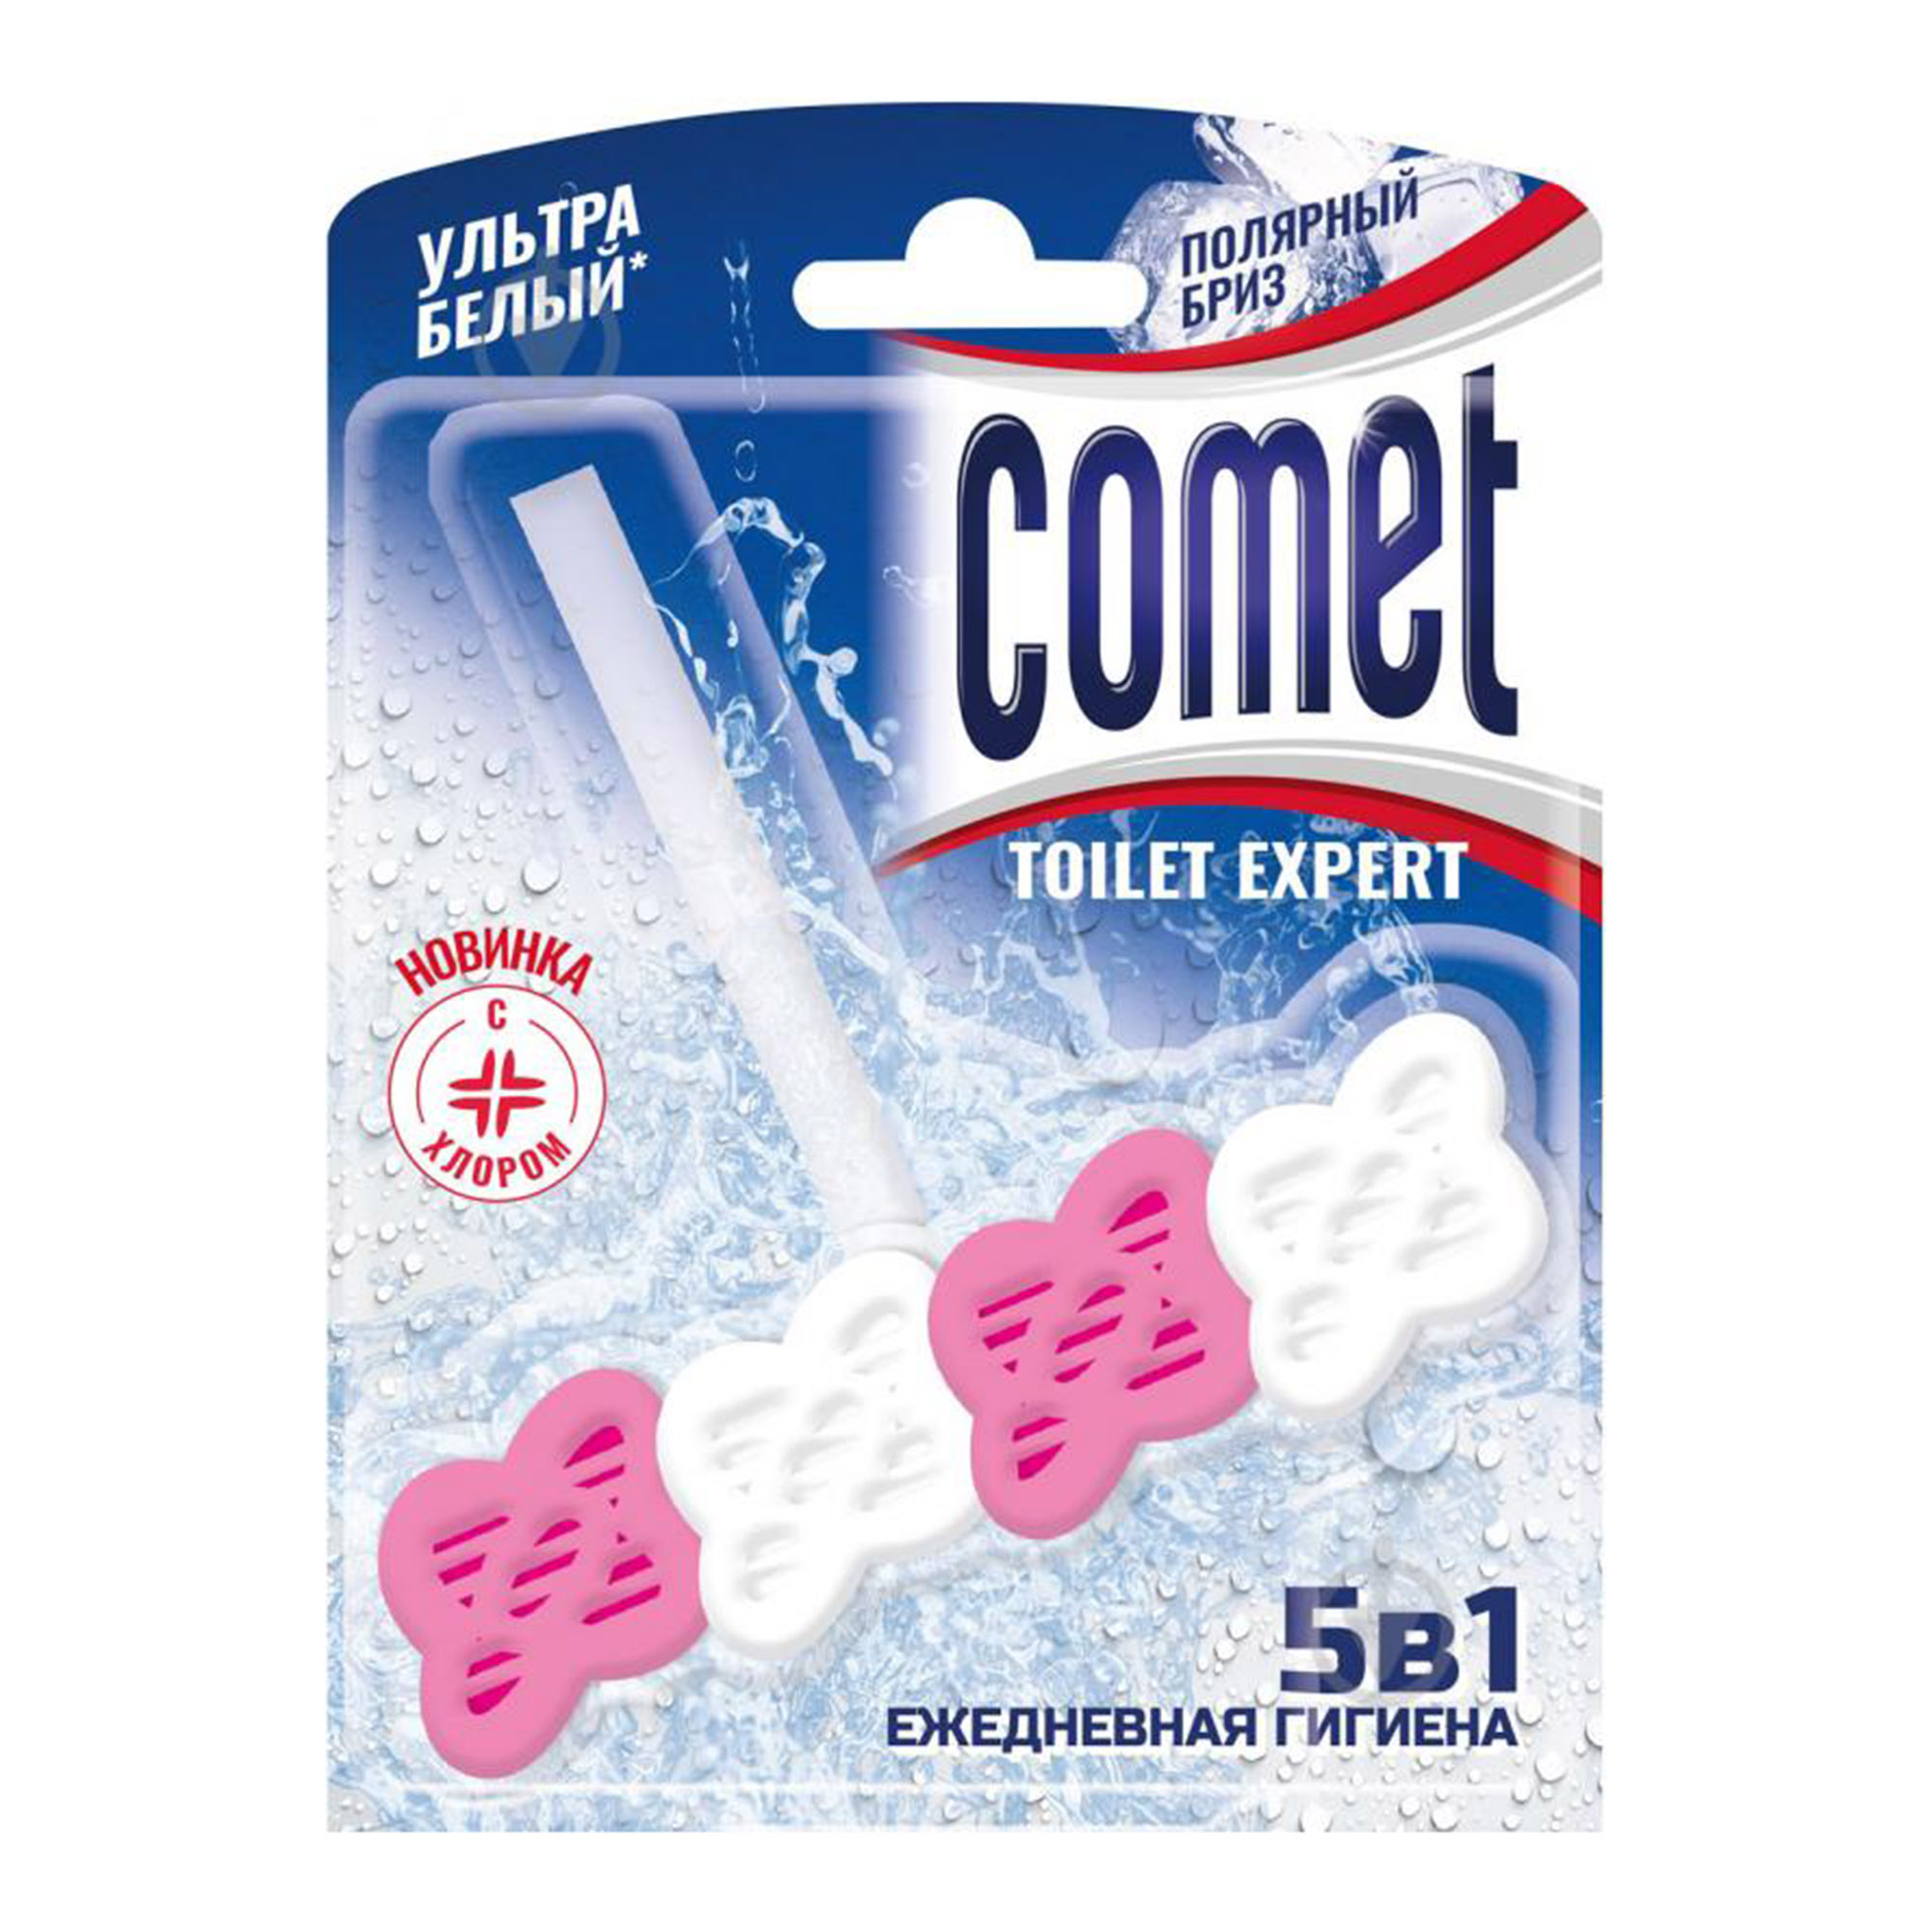 туалетный блок comet лимон 48 г Туалетный блок Comet Полярный бриз 48 г